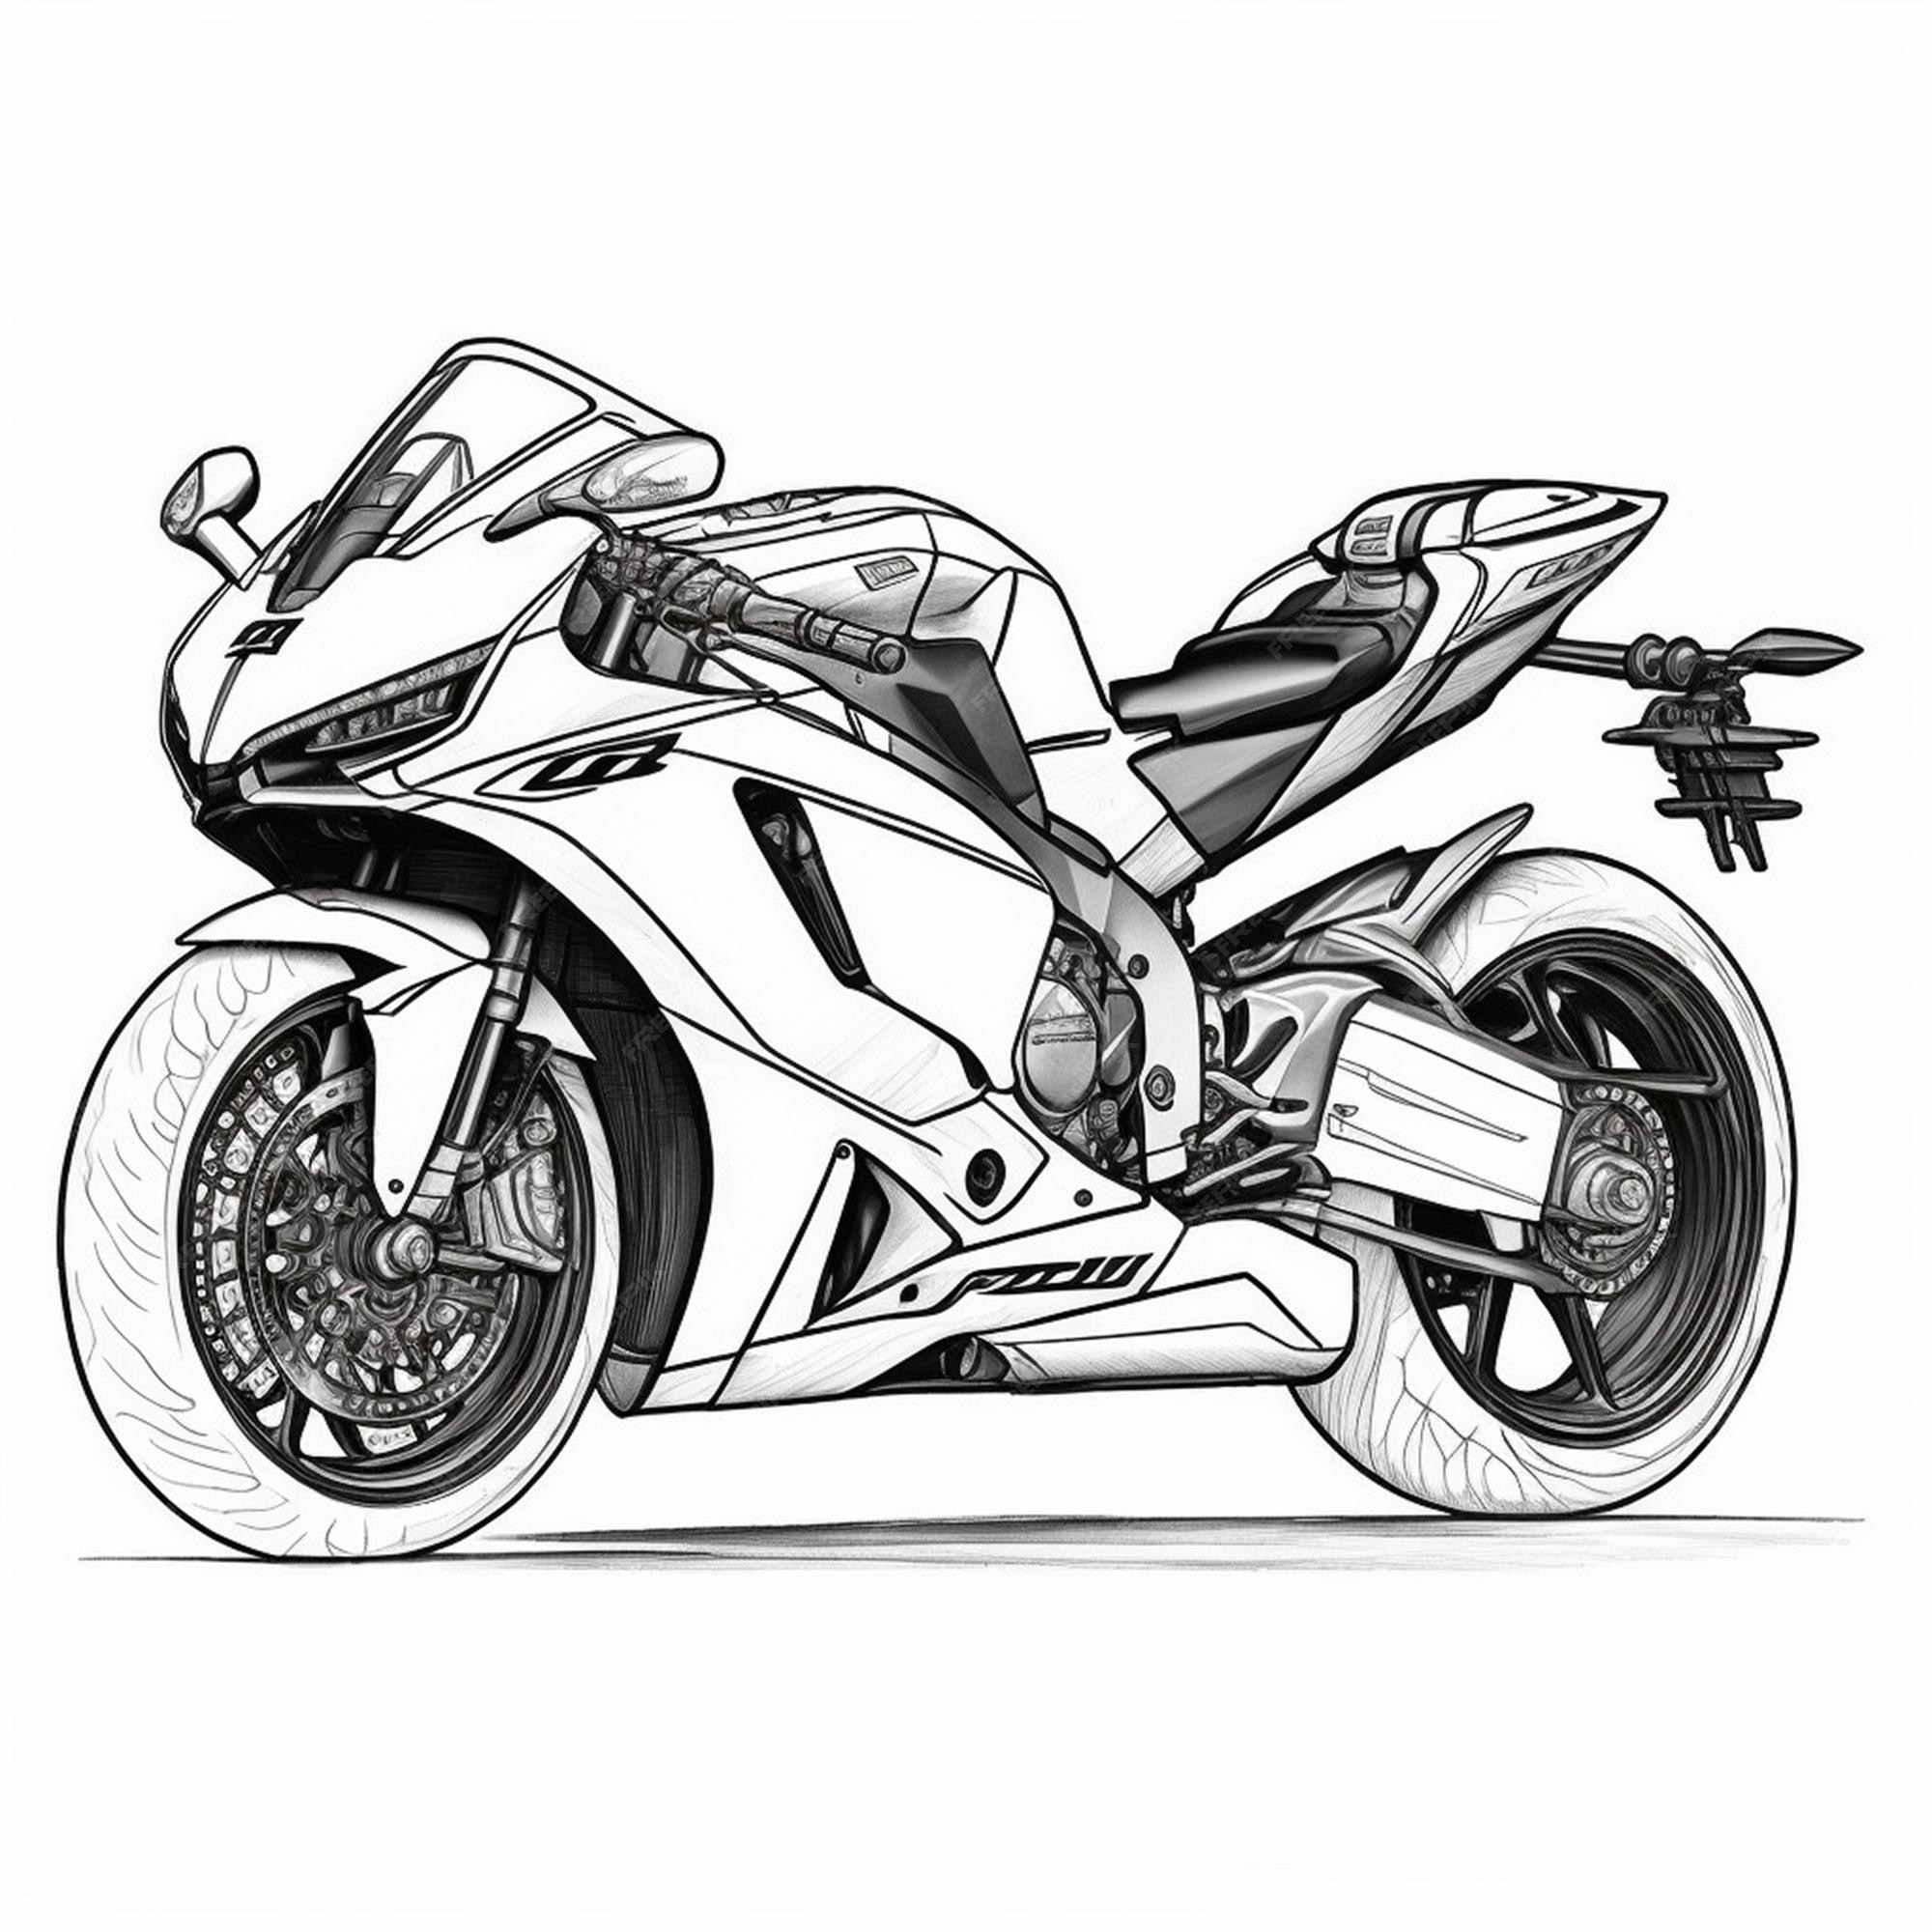 desenhos de motos para colorir e imprimir